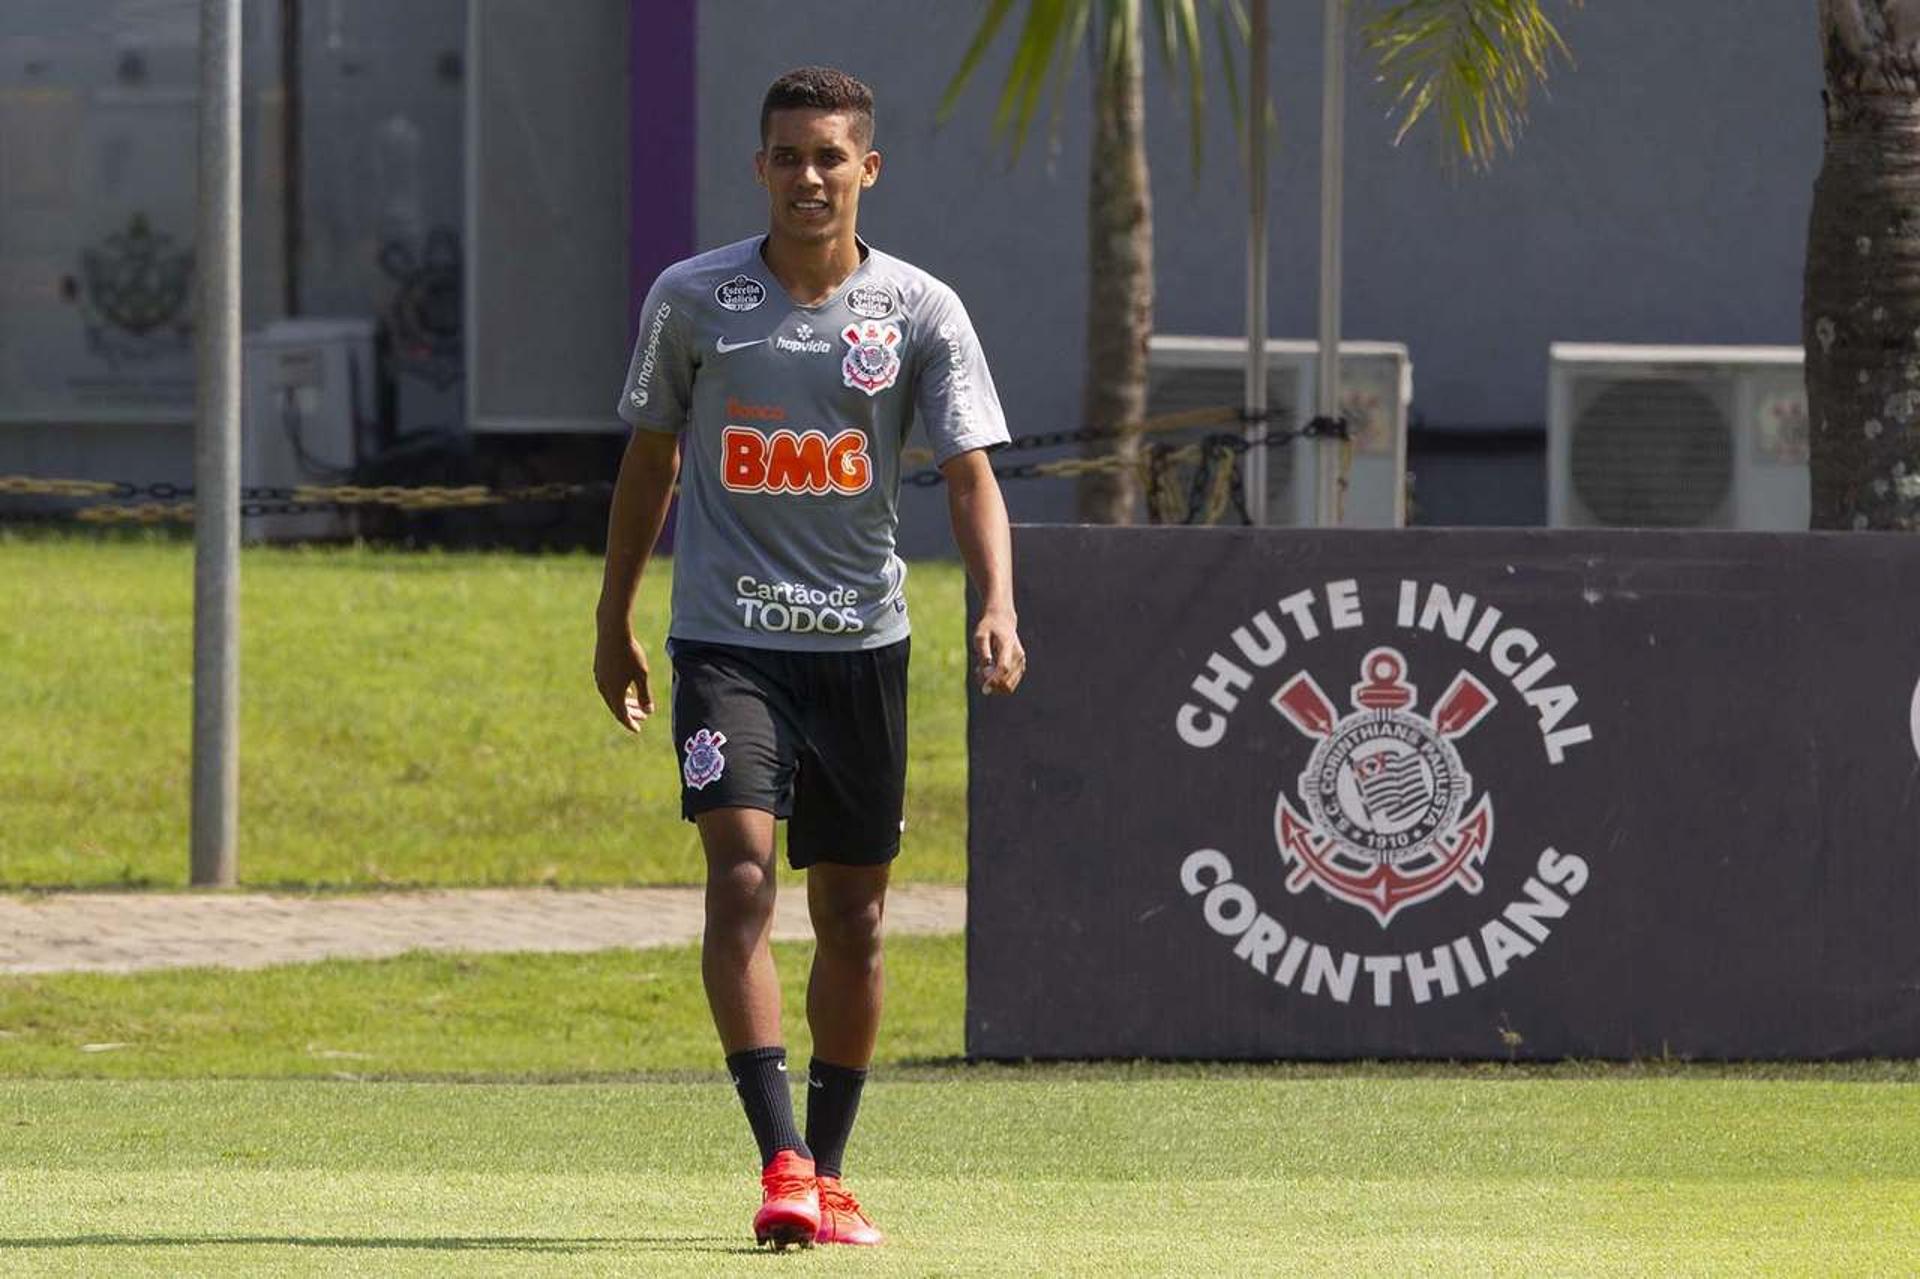 Pedrinho deixa o Corinthians ao fim do Campeonato Paulista